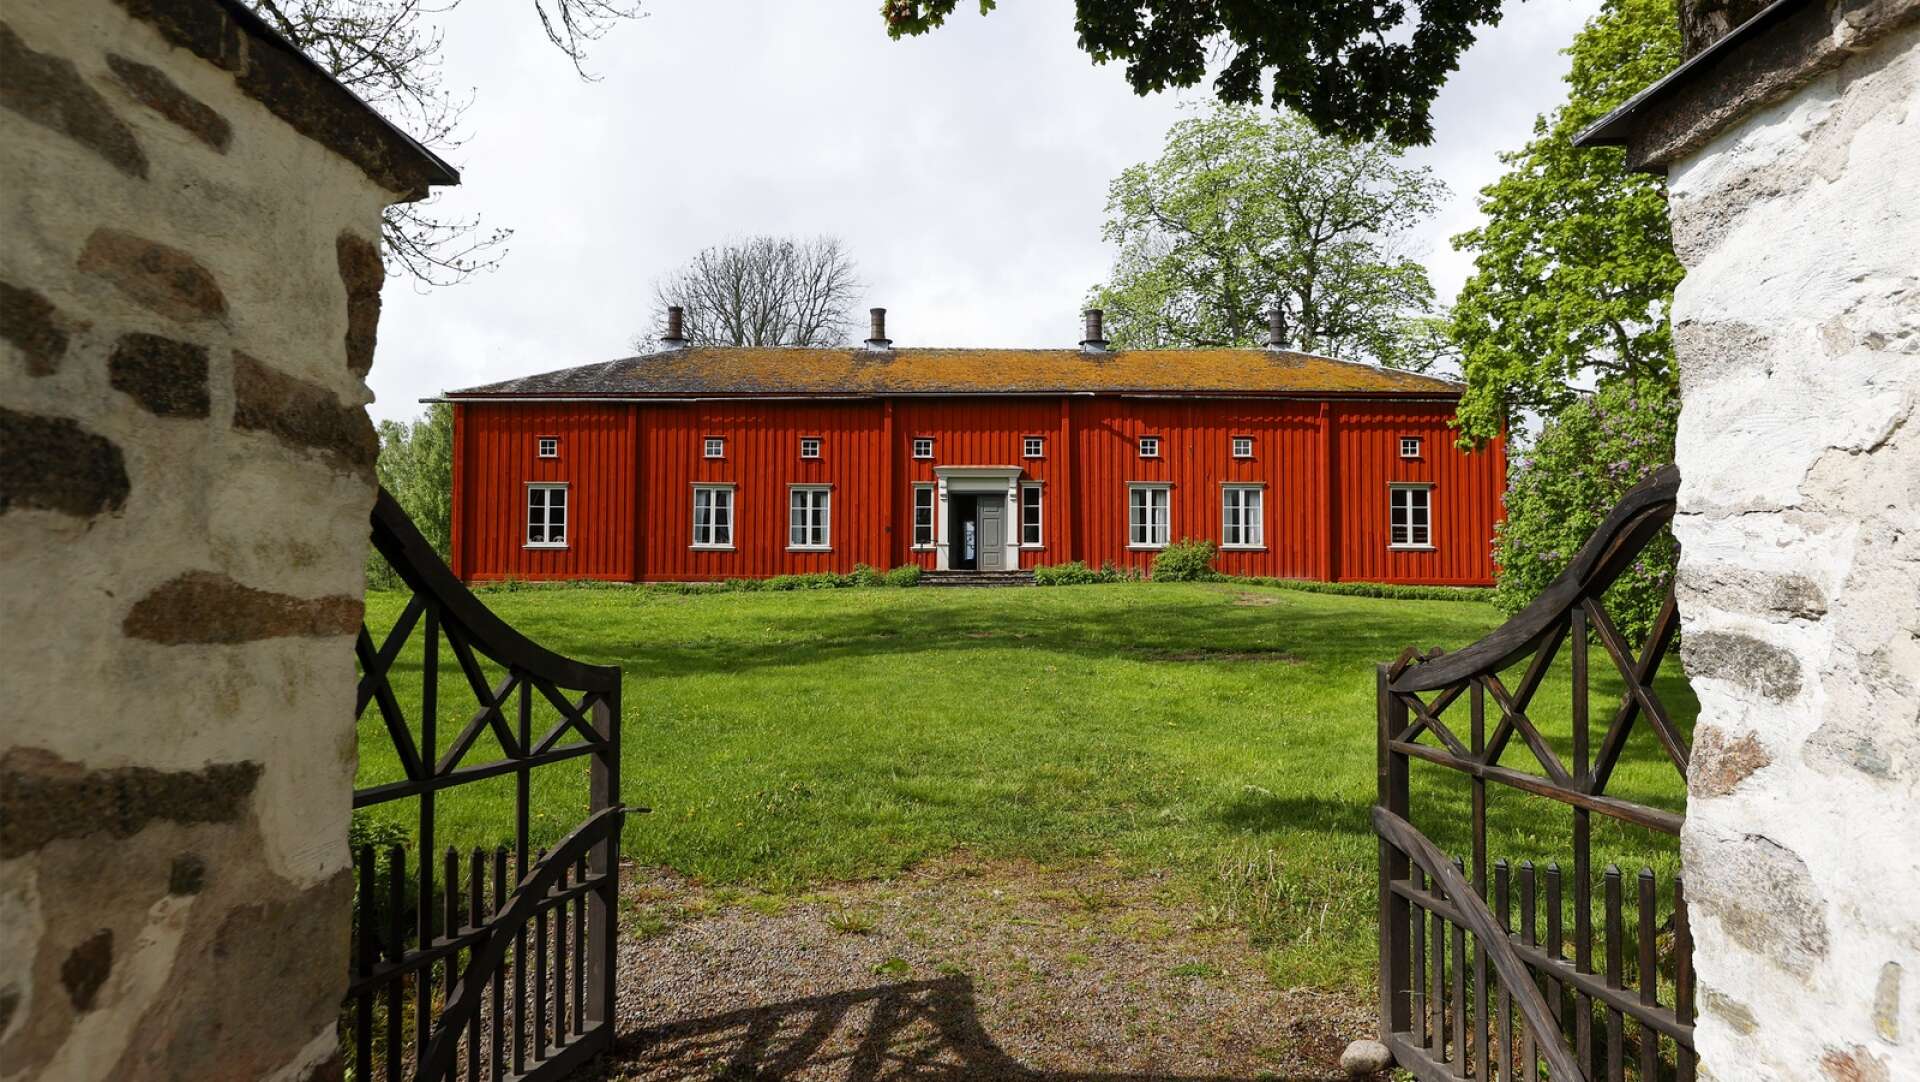 Värmlands museum har sökt och fått en miljon kronor ur Lars Lawiskis fond som öronmärks för von Echstedtska gården utanför Säffle 